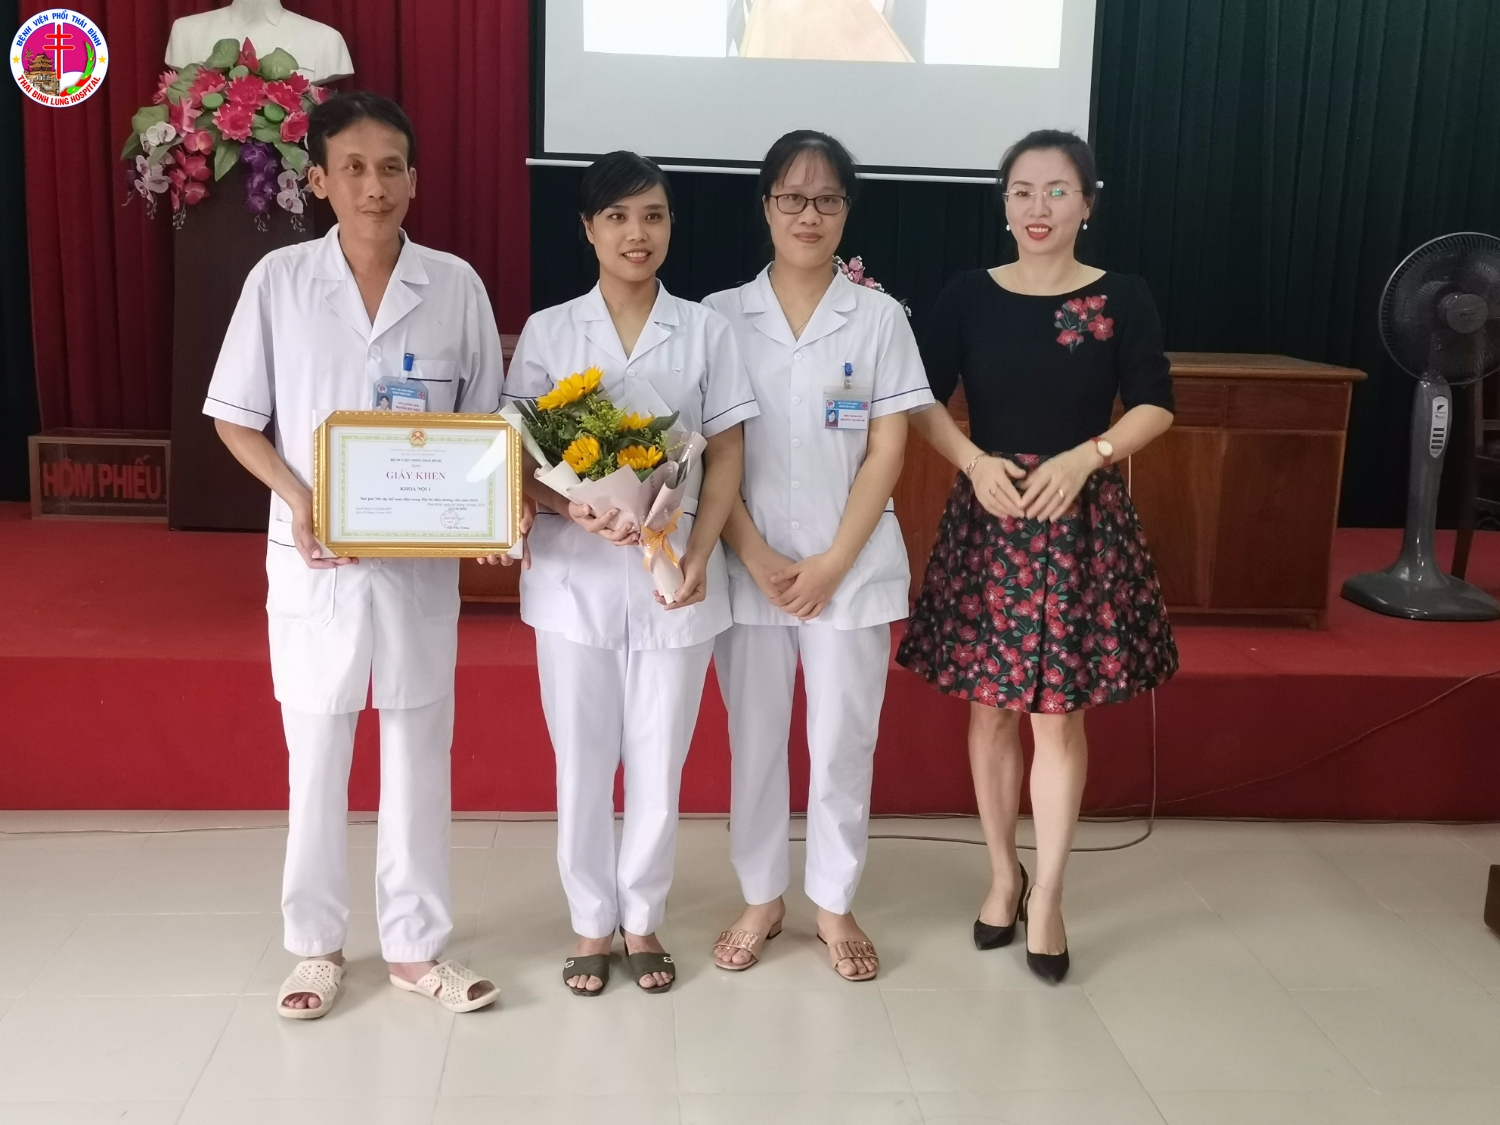 Đồng chí Bùi Thị Lan Hương - Điều dưỡng trưởng Sở Y tế trao giải Nhì tập thể cho khoa Nội 1